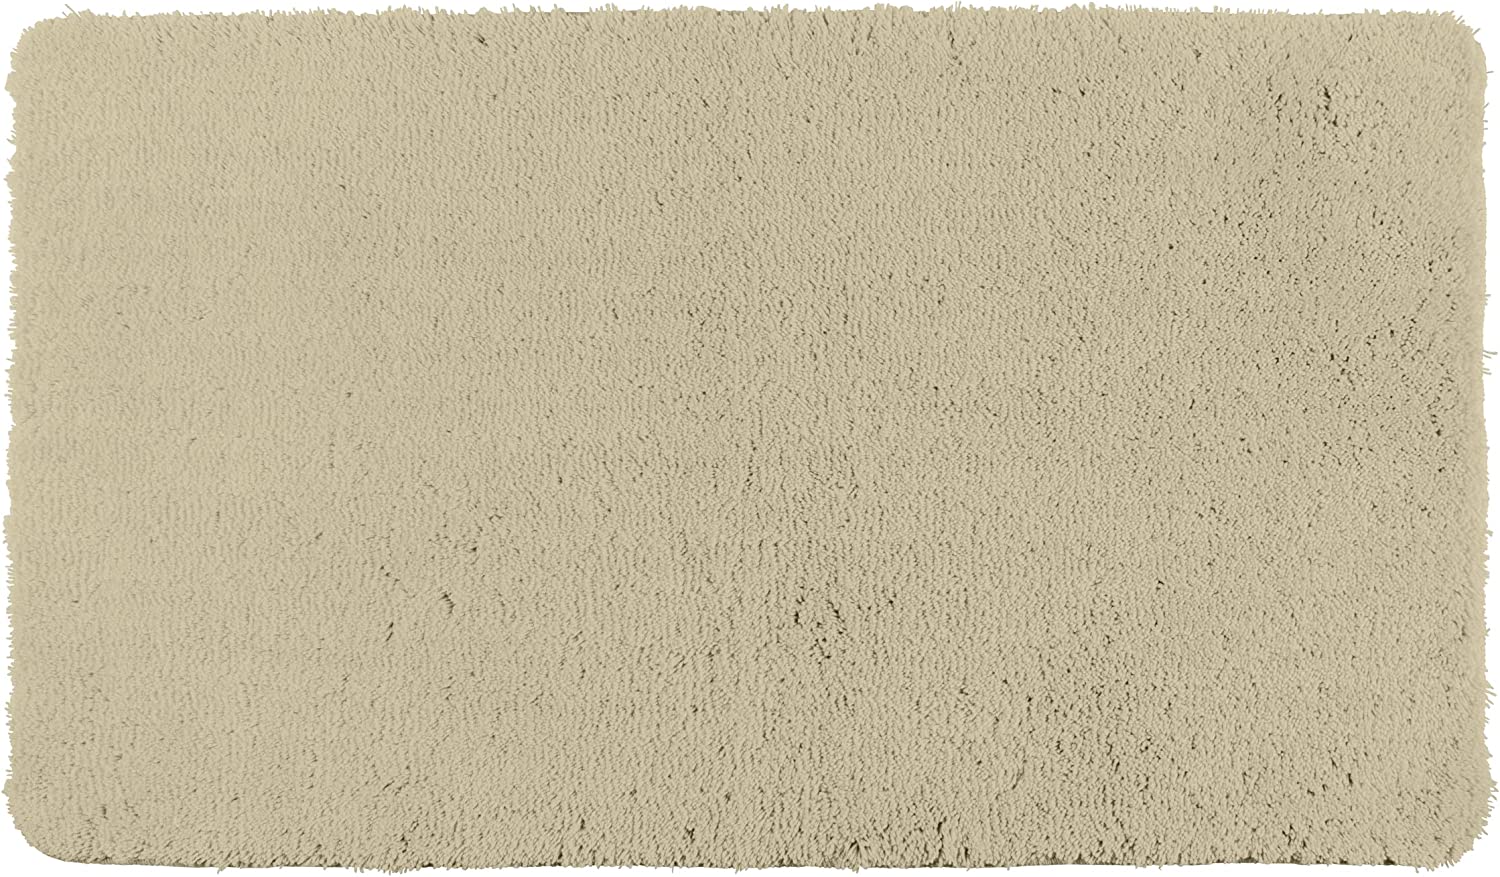 Badteppich Belize Sand, 55 x 65 cm - Badematte, sicher, flauschig, fusselfrei, Polyester, 55 x 65 cm, Beige